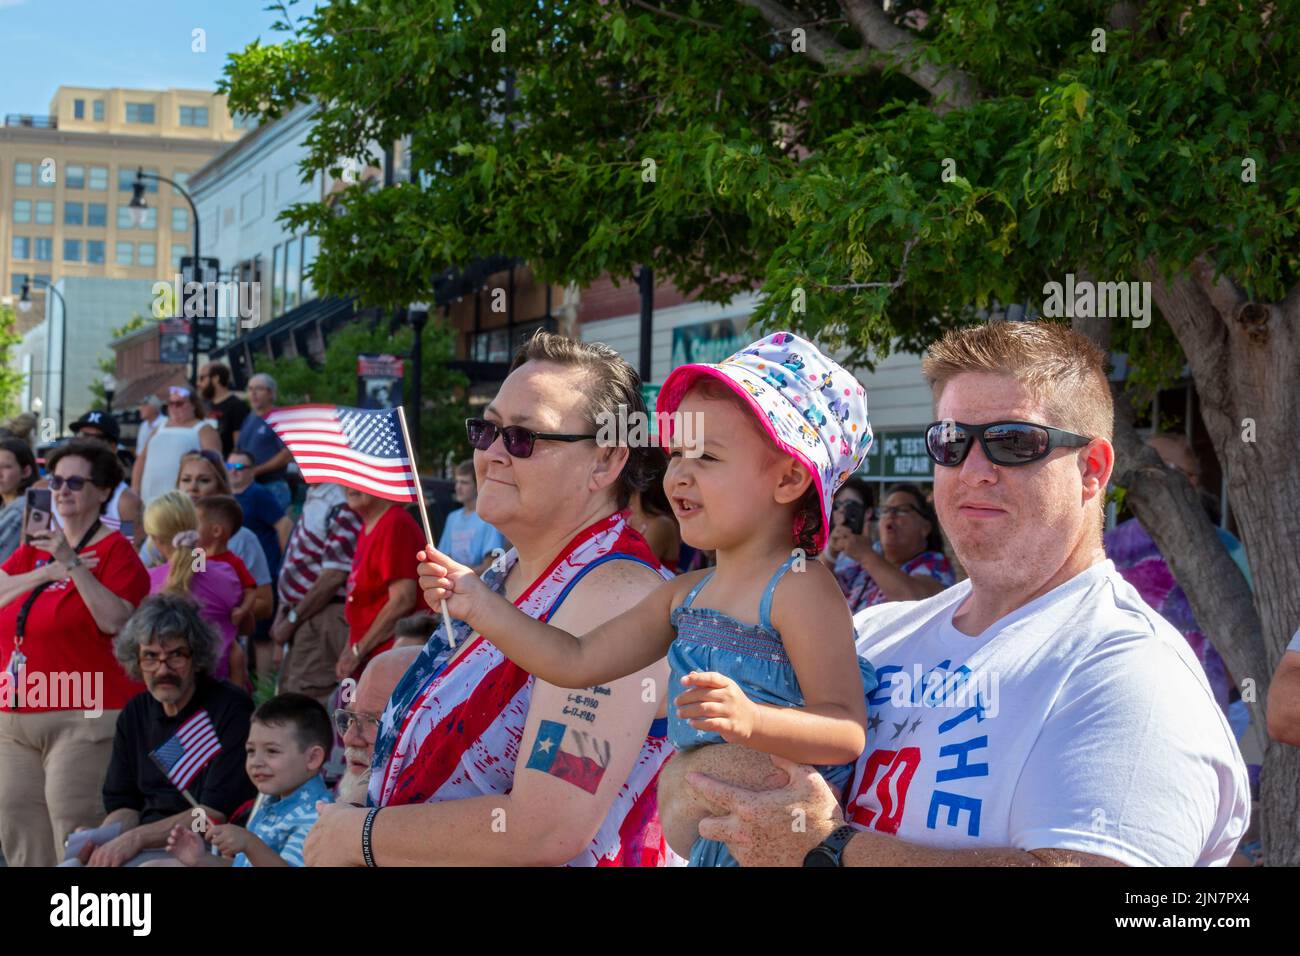 Hutchinson, Kansas - Espectadores en el 'Patriots Parade' anual del 4 de julio en la zona rural de Kansas. Foto de stock